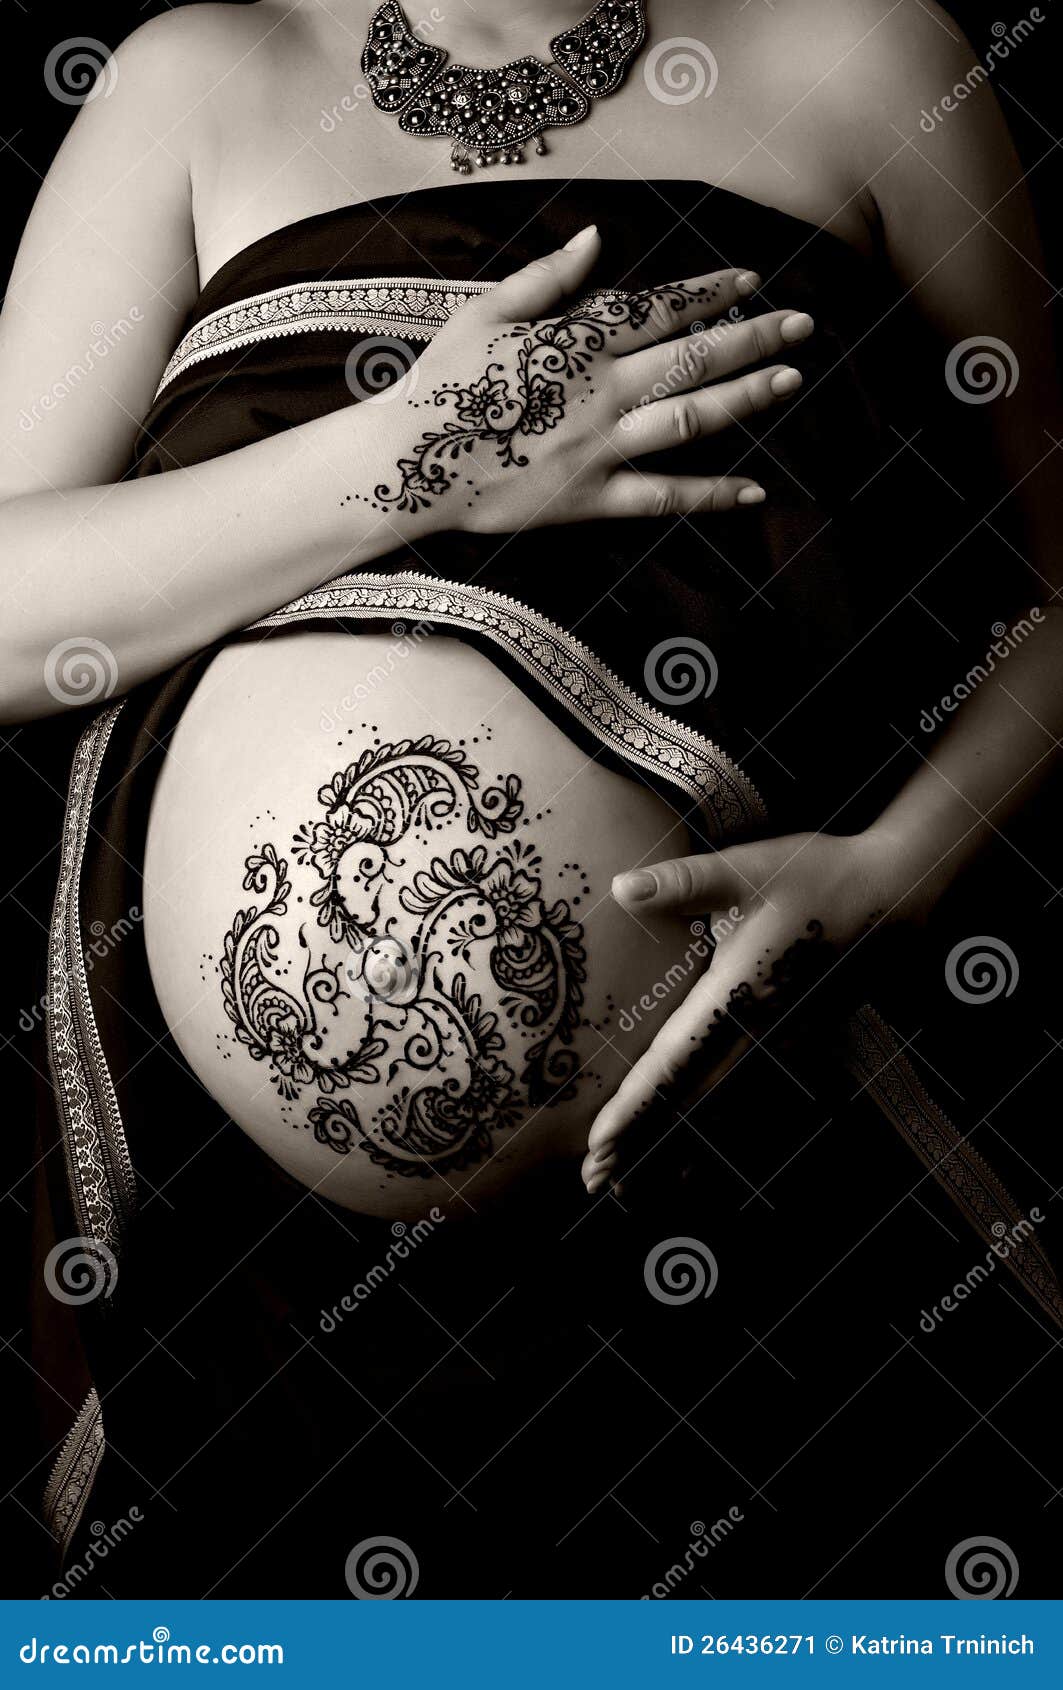 Lucknow Pregnancy Care Tips: क्या प्रेगनेंसी में सिर पर मेहंदी लगाना हो  सकता है घातक? जानिए एक्सपर्ट की राय - Can applying henna on the head during  pregnancy be fatal know the